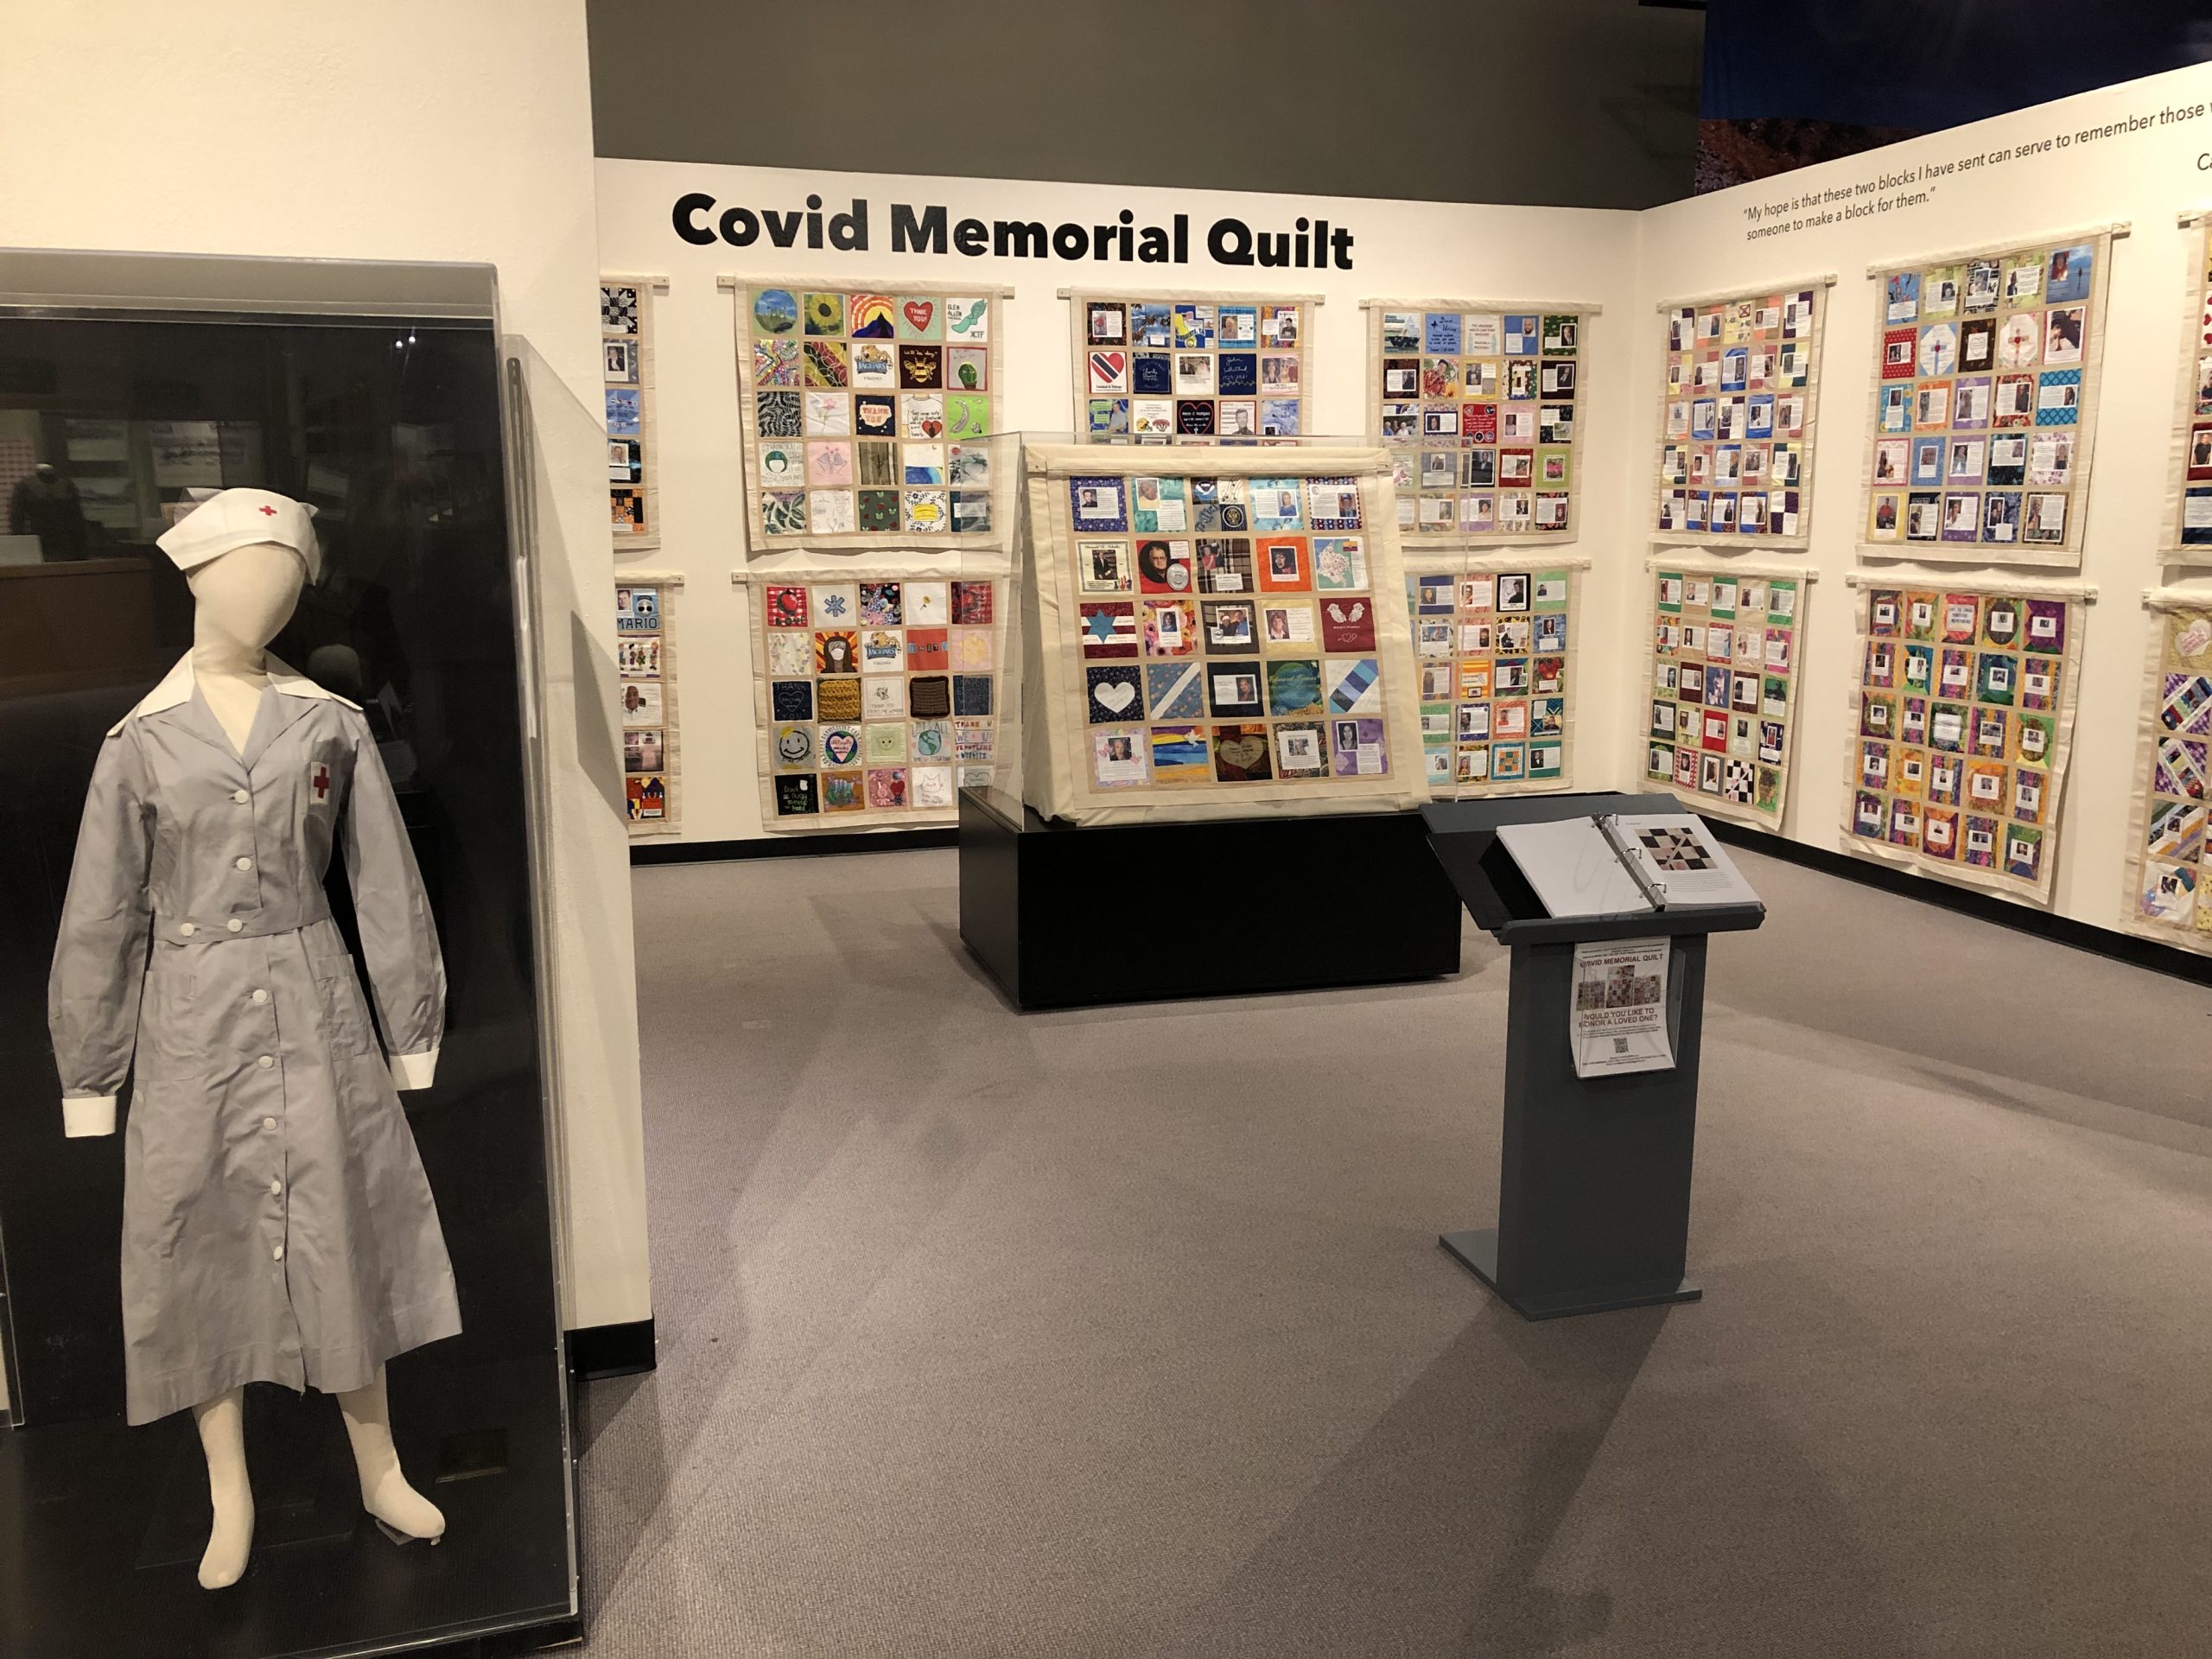 Covid Memorial Quilt exhibit